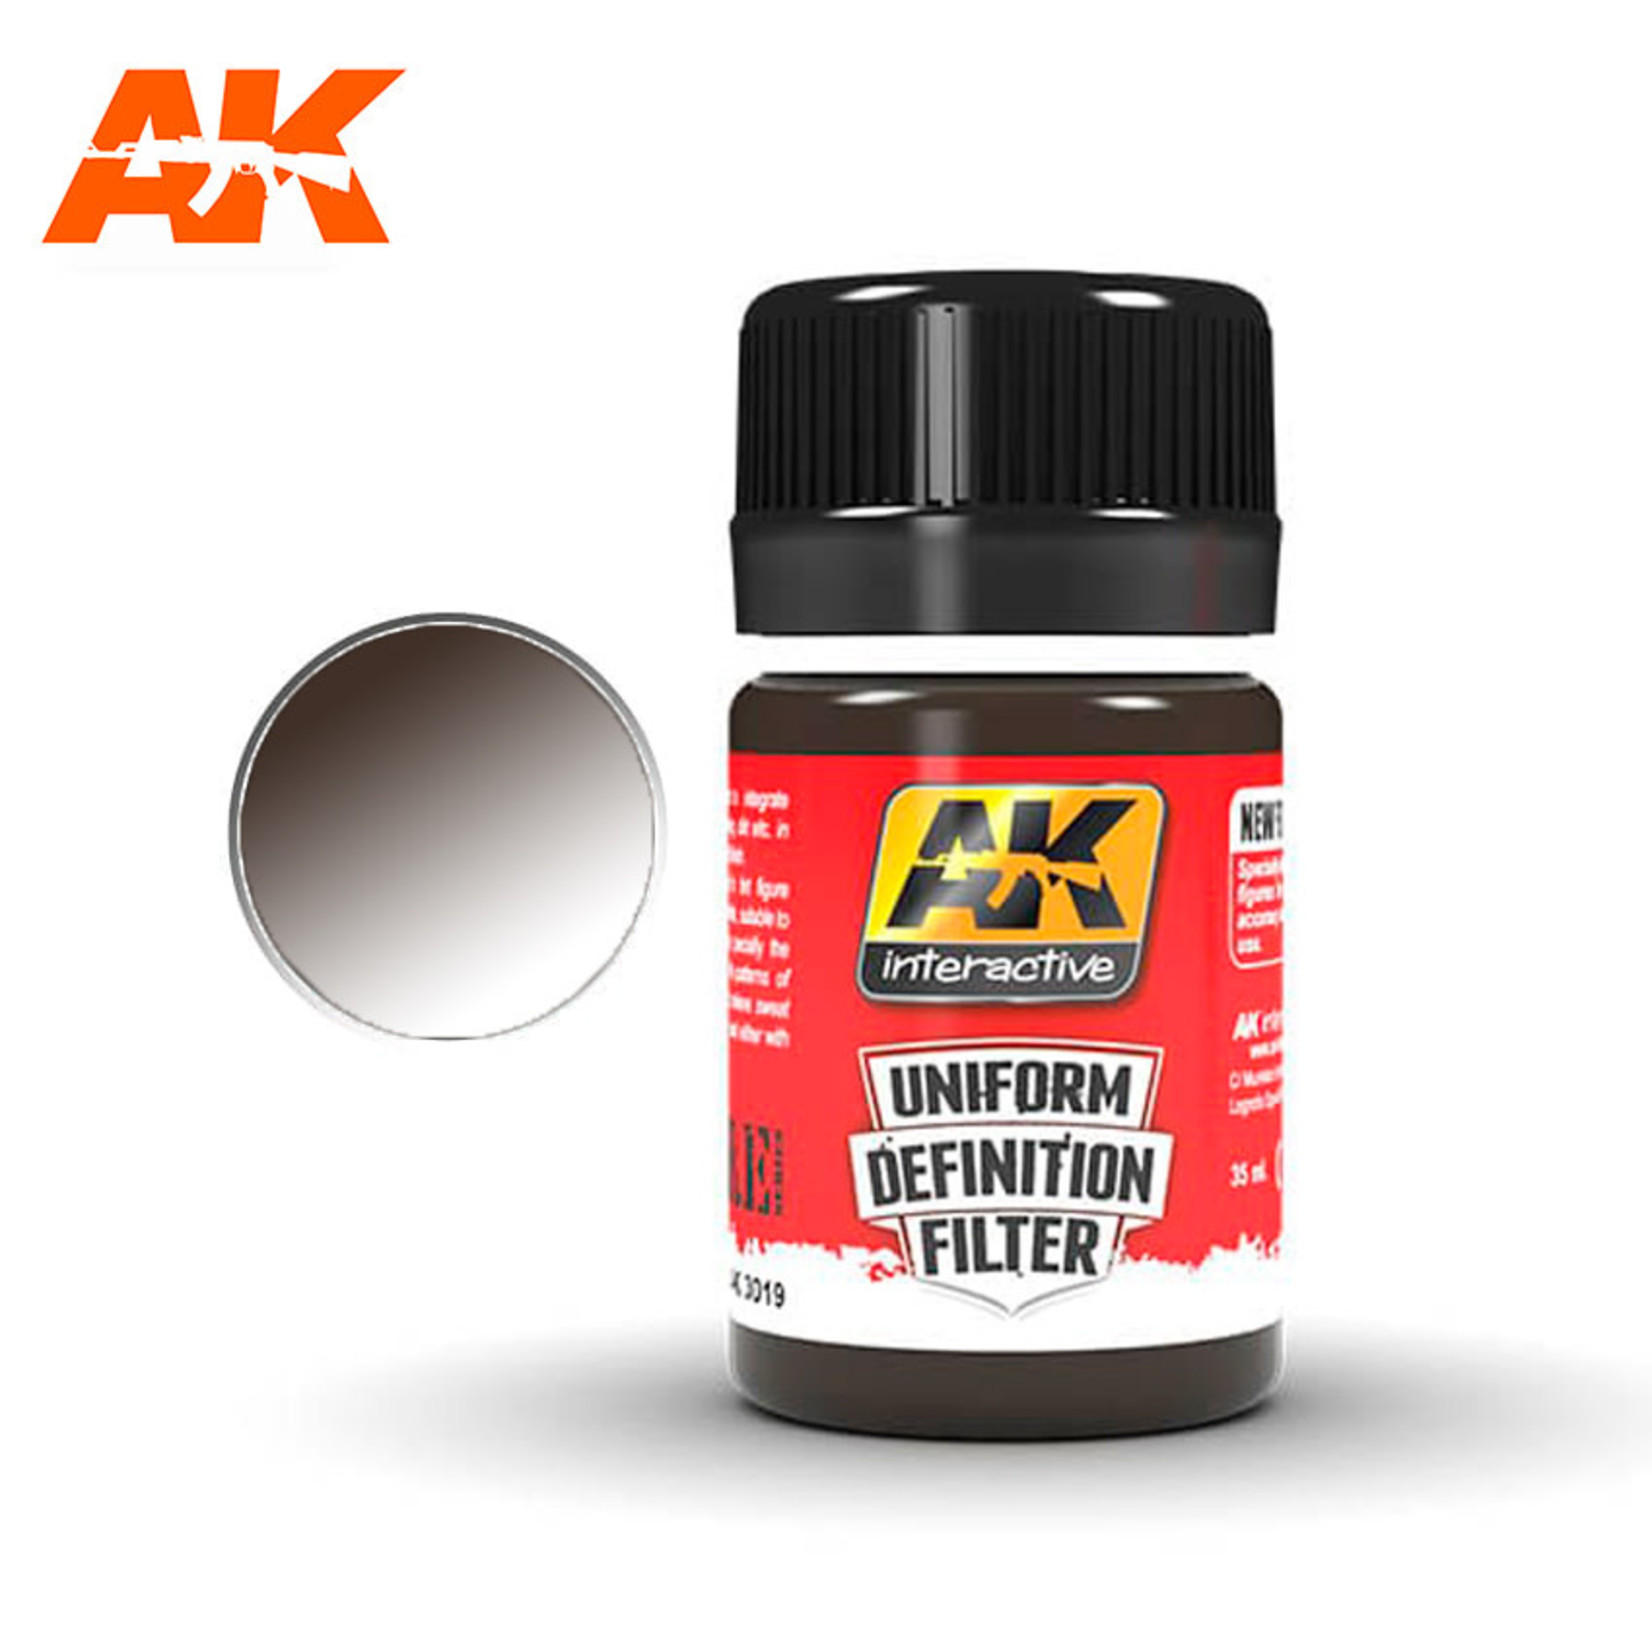 AK Interactive AK3019 Uniform Definition Filter Dark Brown Glaze 35ml